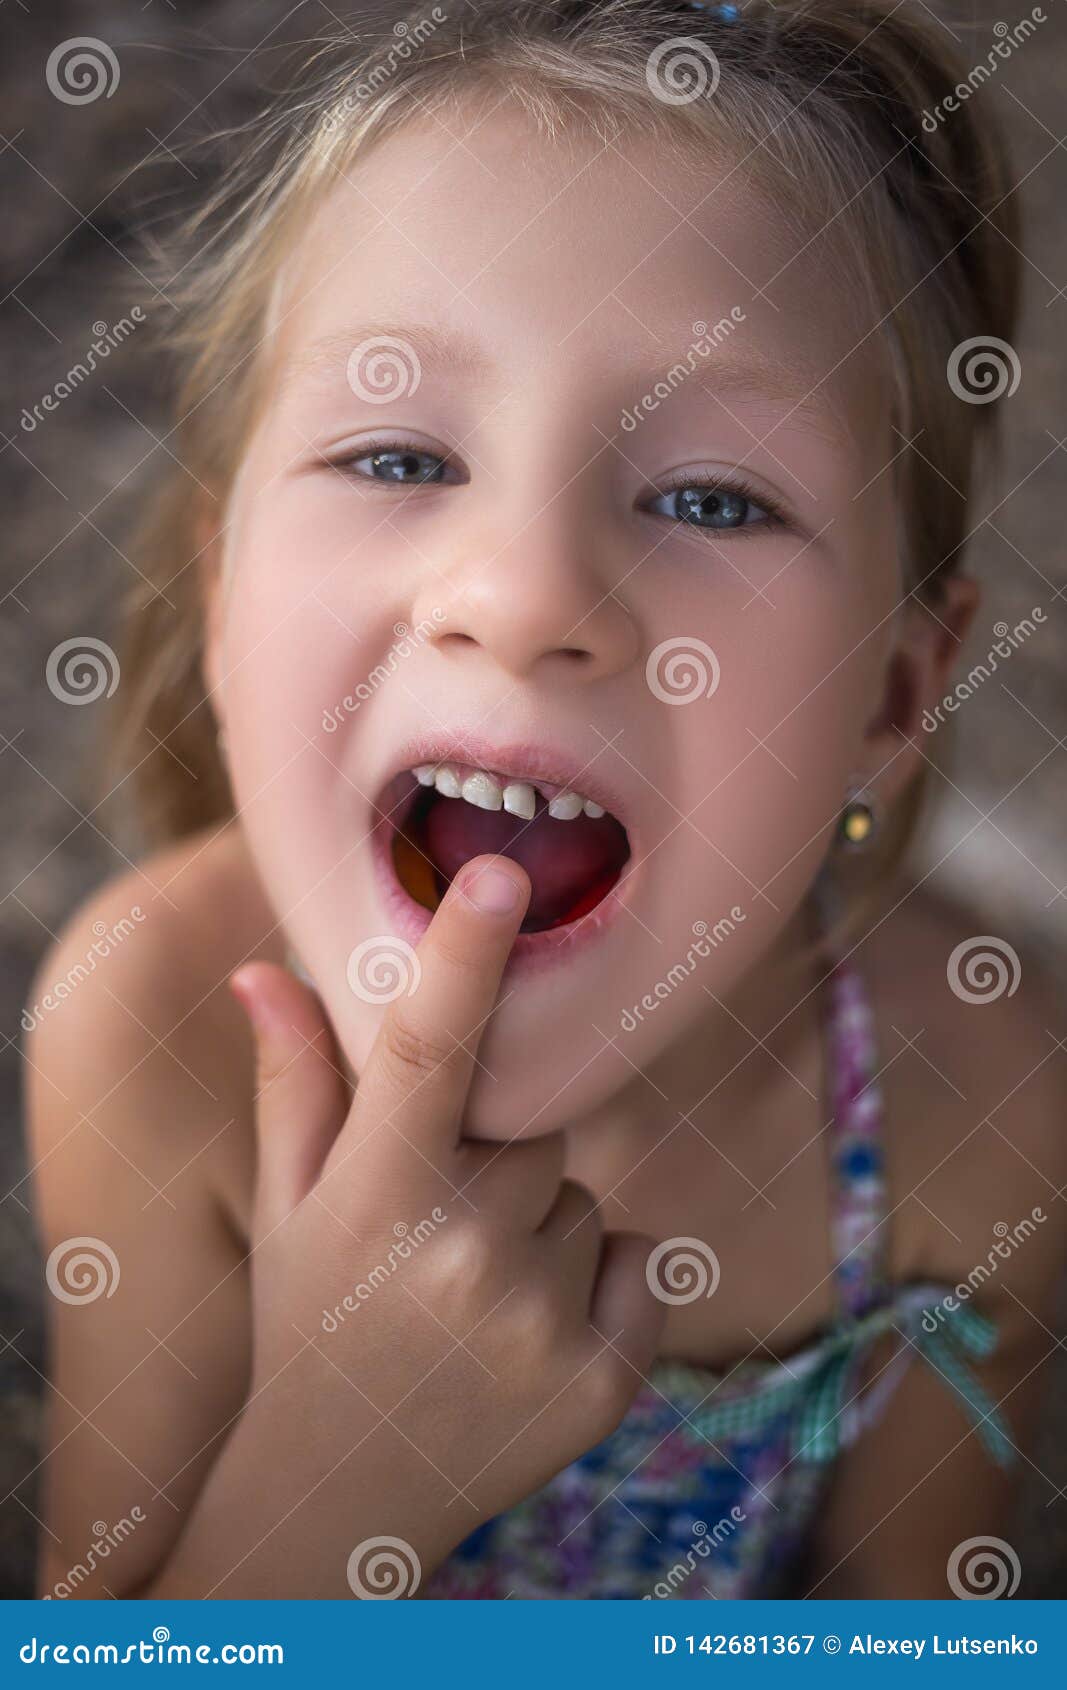 юной девочке сперму в рот фото 61